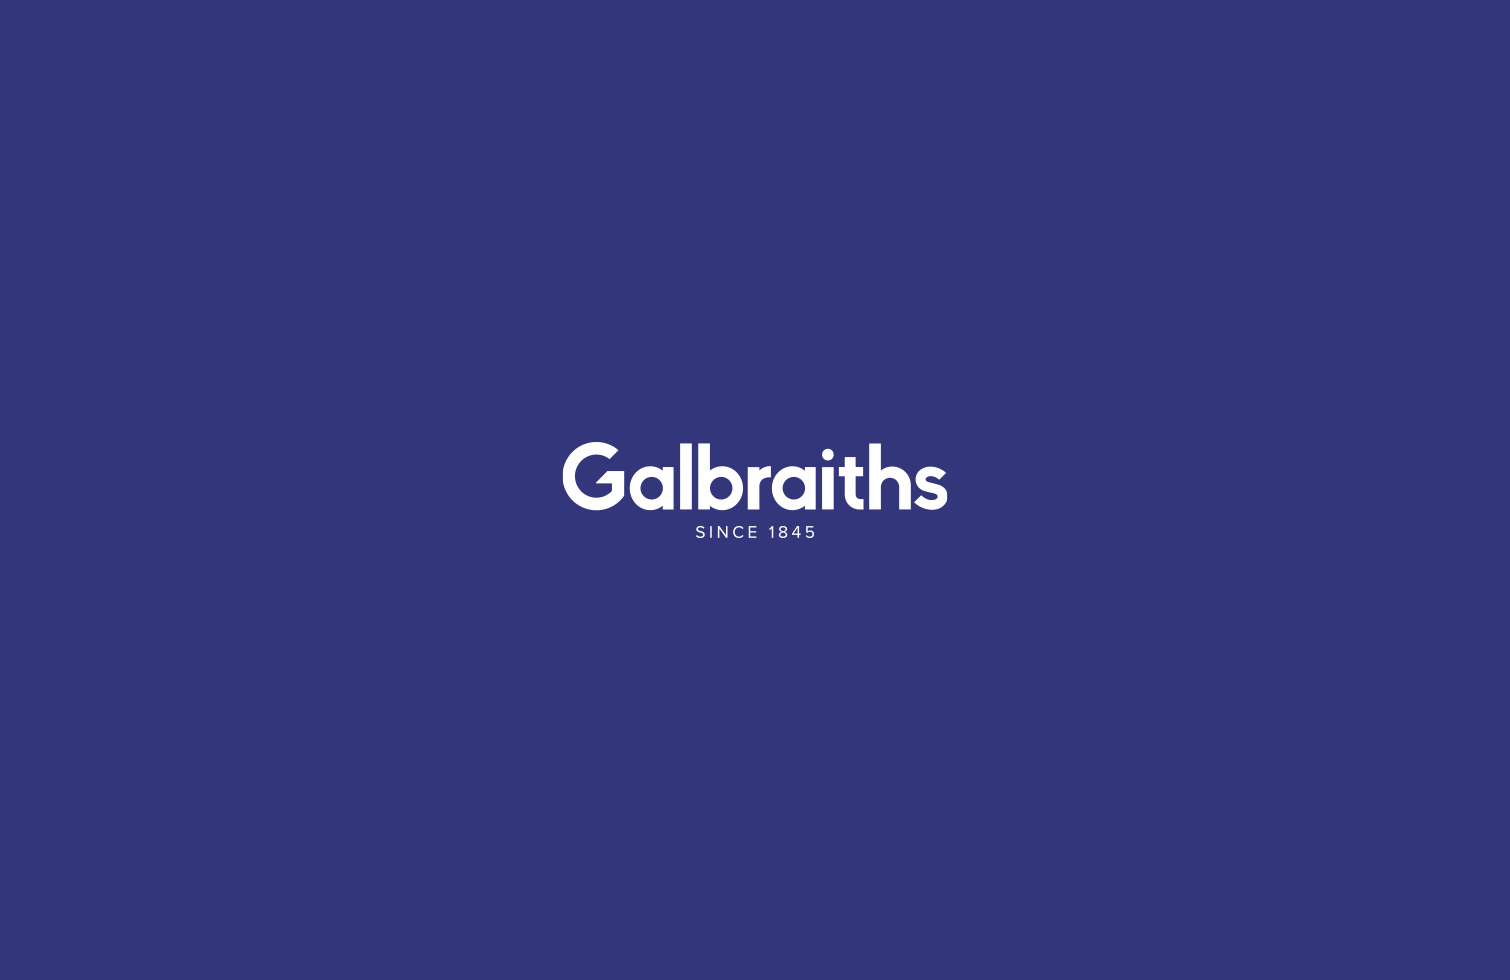 Galbraiths